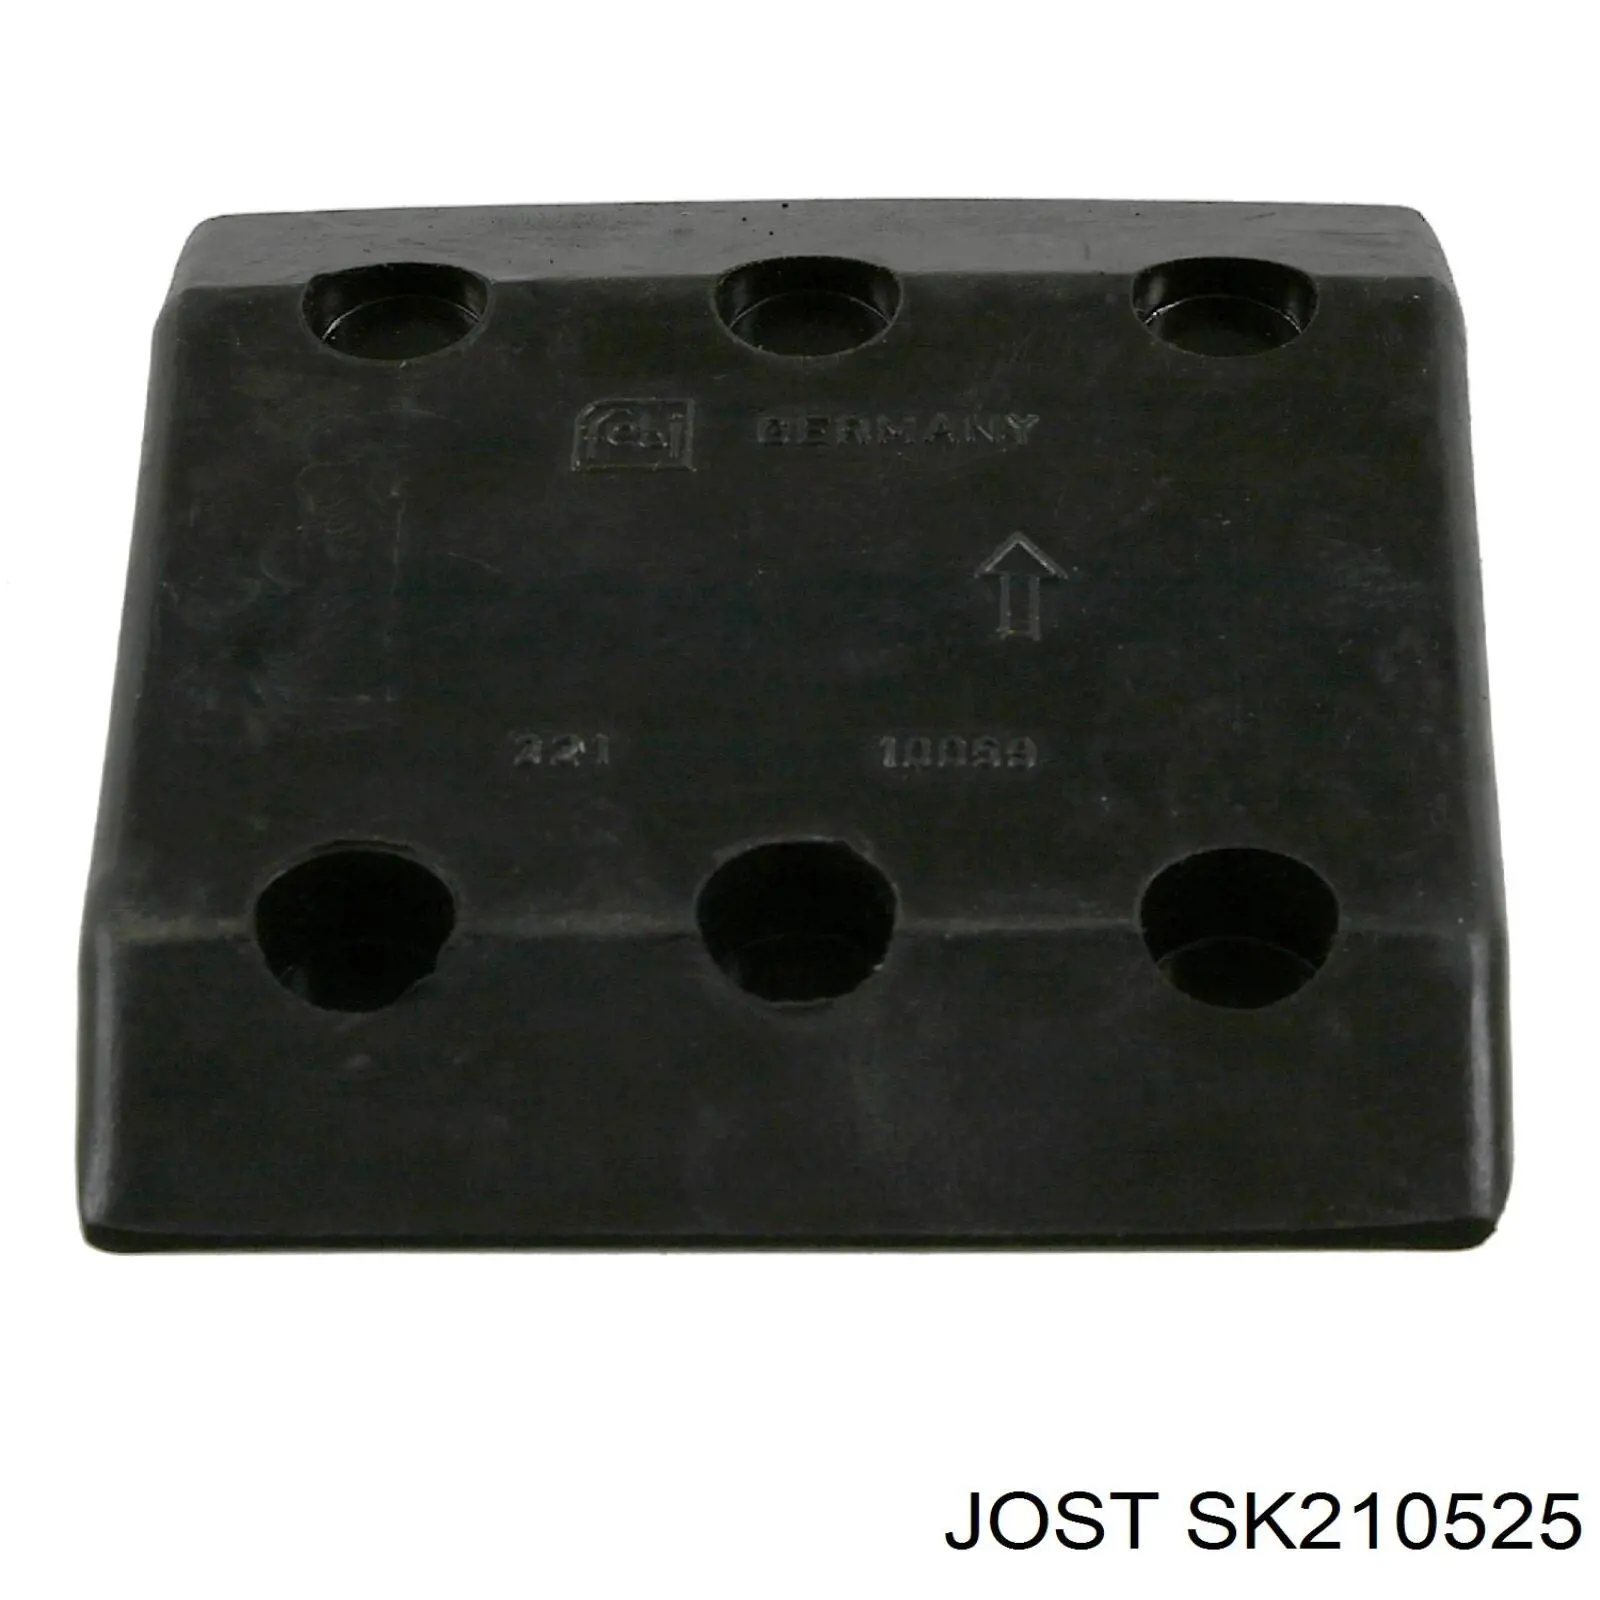 SK 2105-25 Jost ремкомплект замка седла прицепного устройства